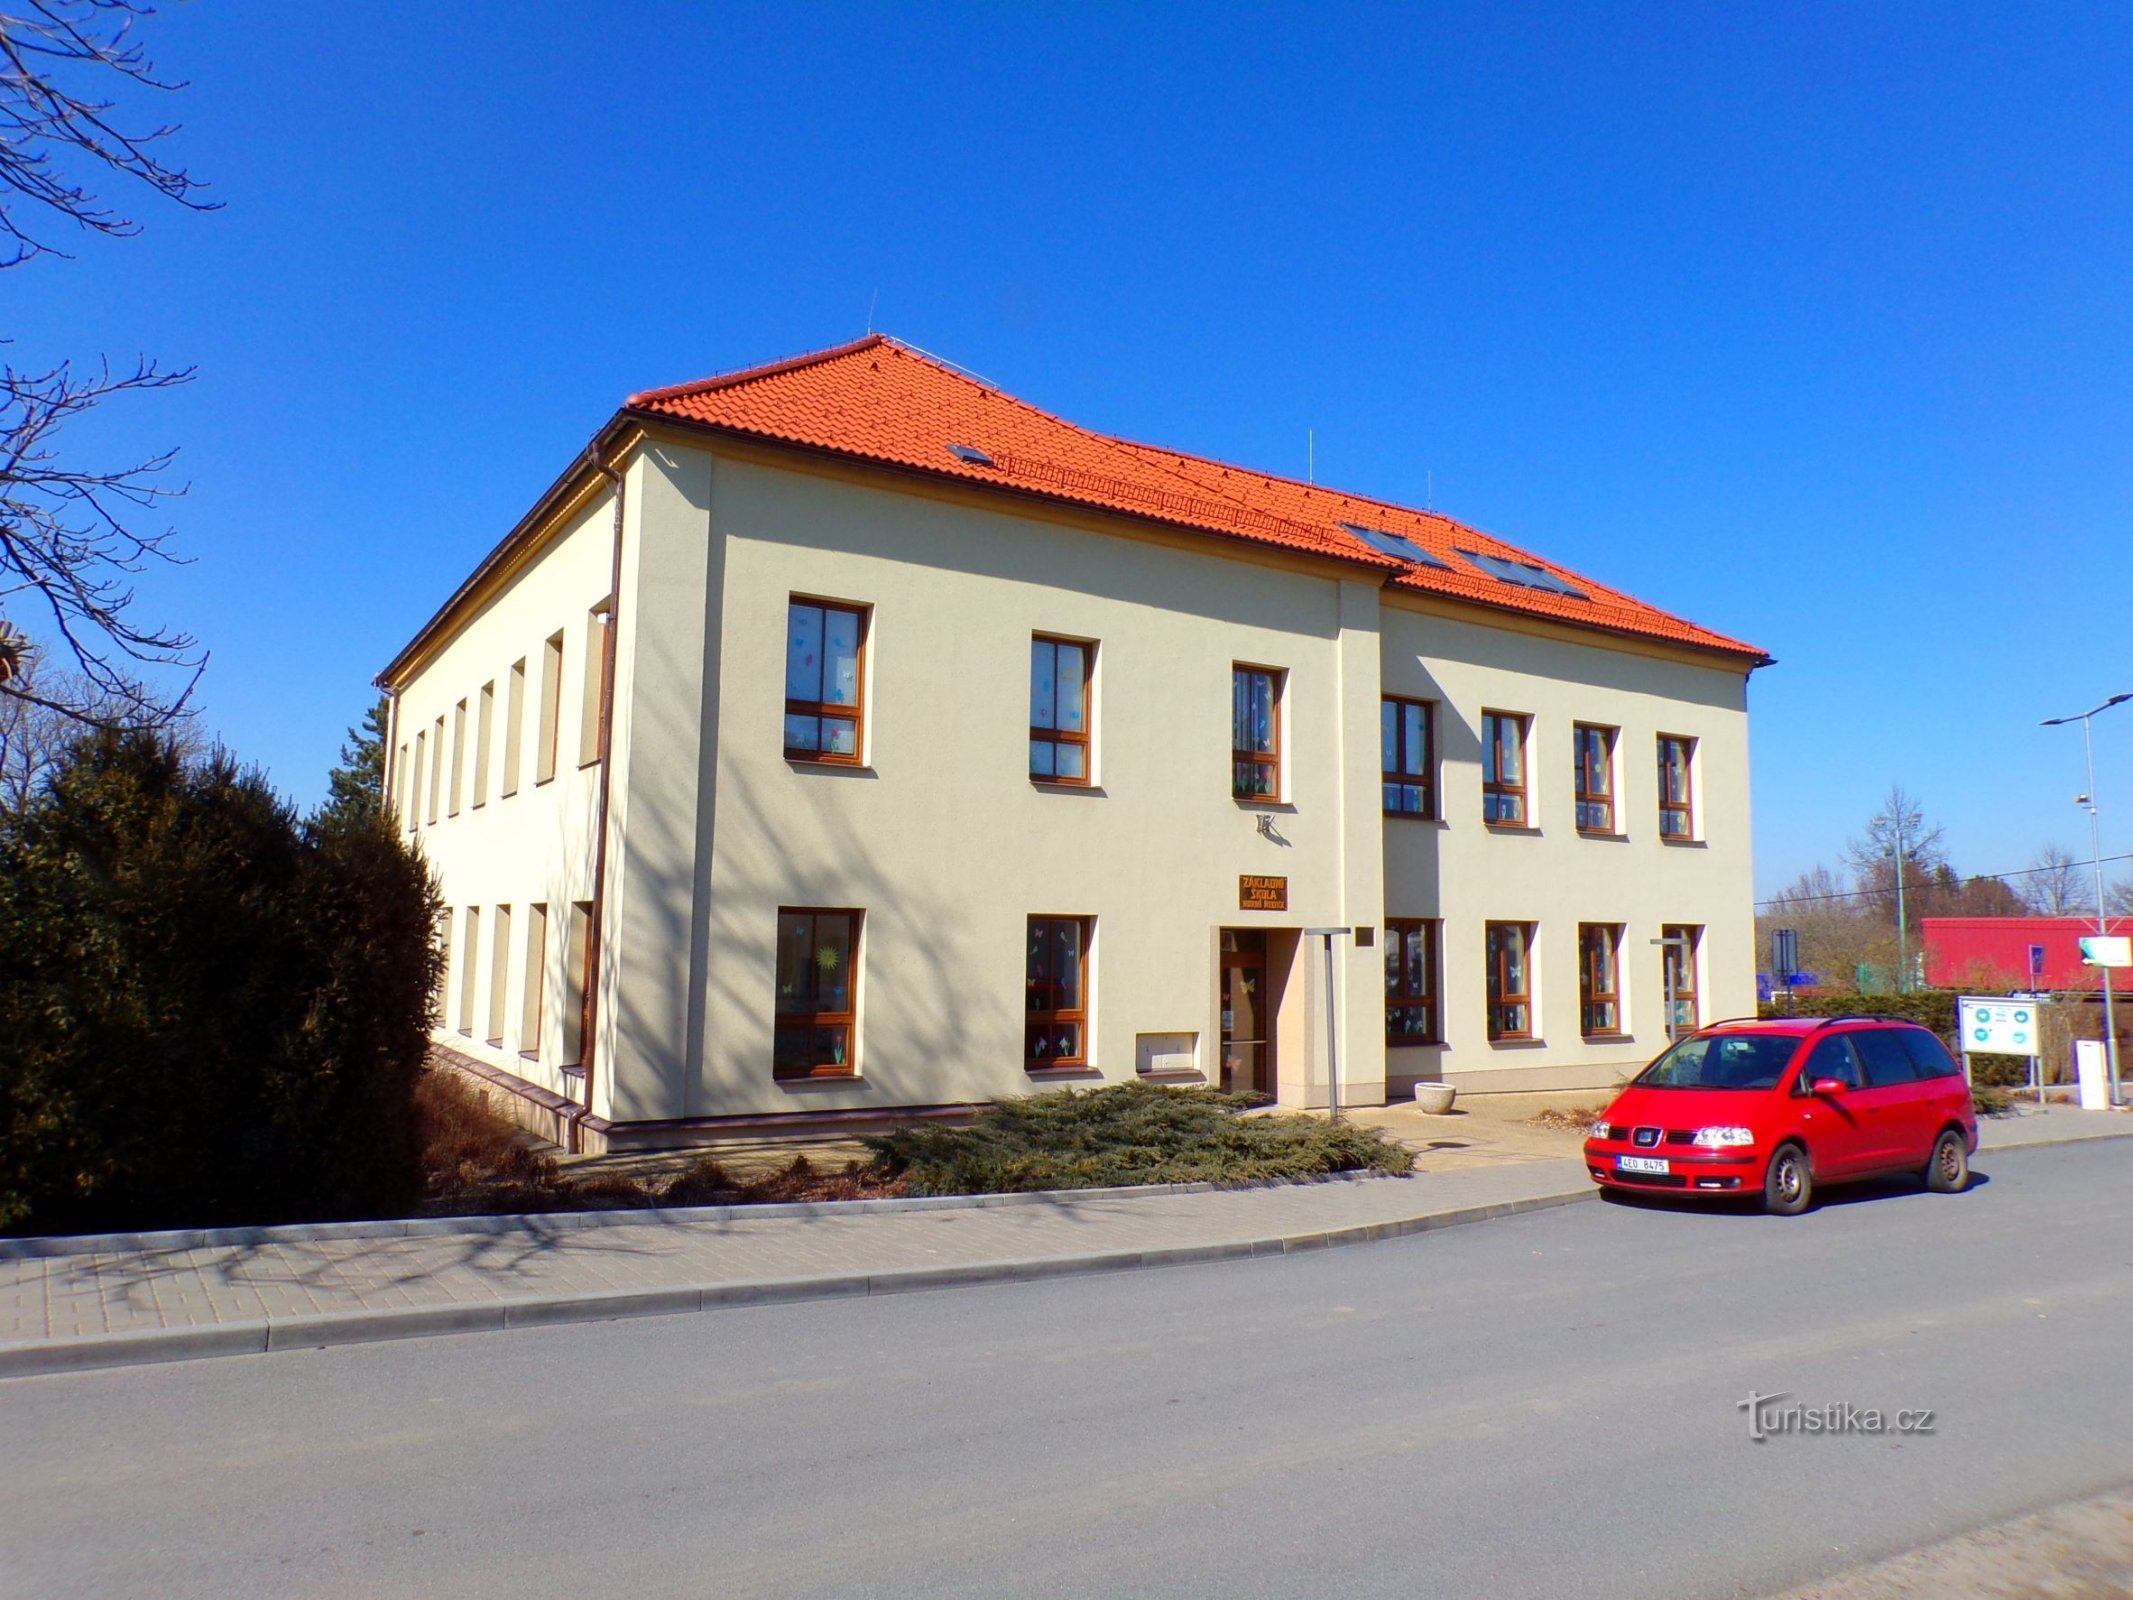 Škola (Horní Ředice, 21.3.2022)